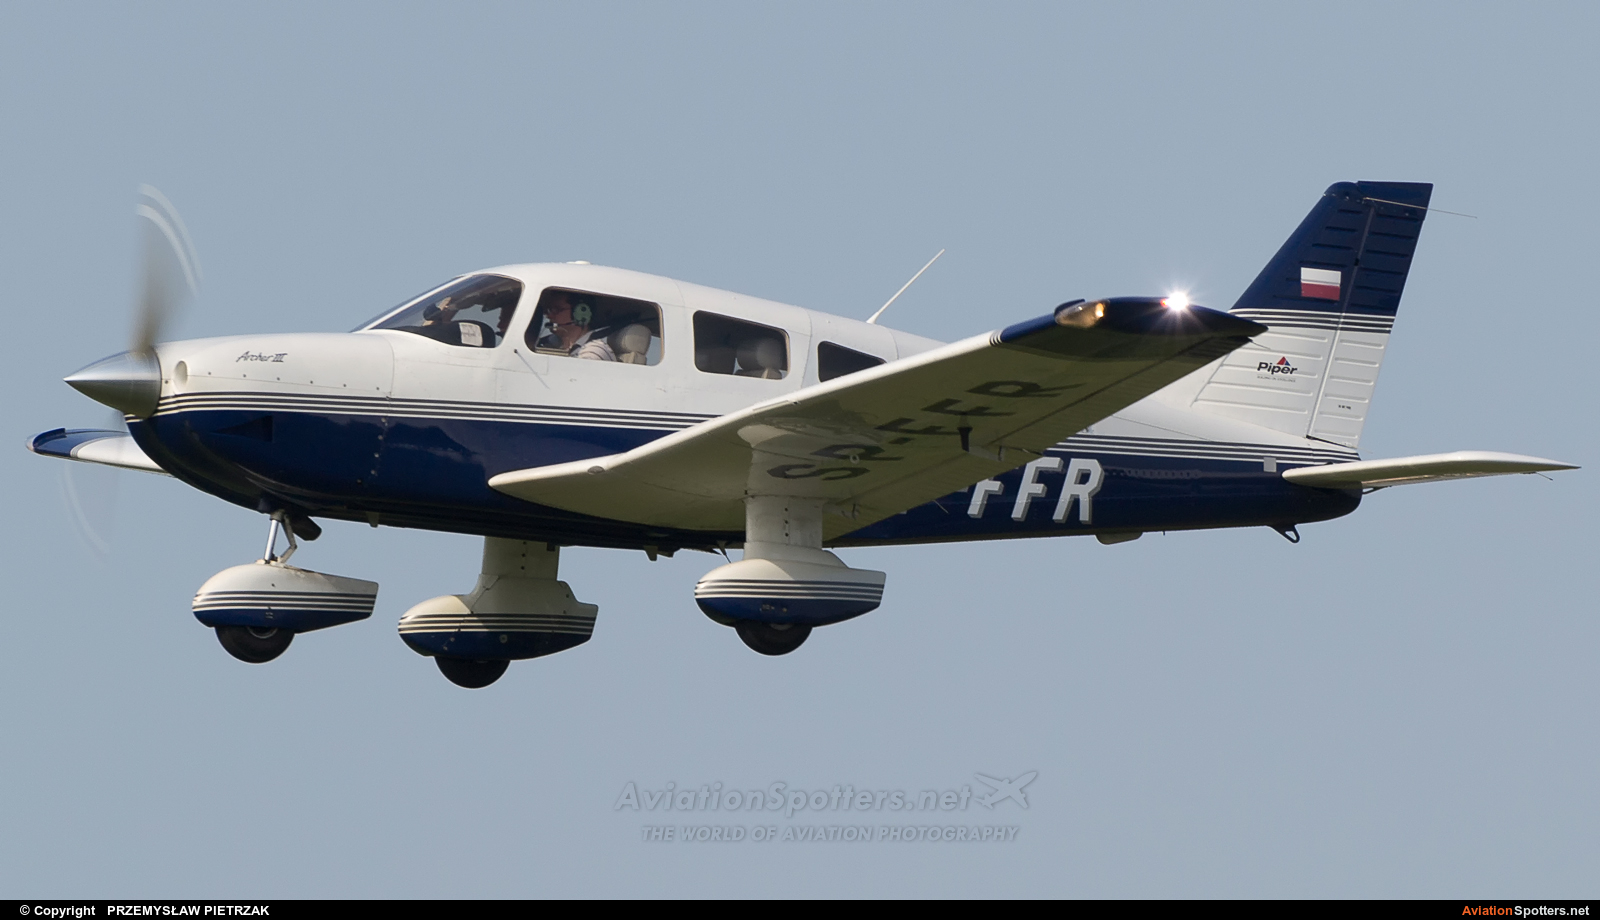   PA-28 Archer  (SP-FFR) By PRZEMYSŁAW PIETRZAK (PEPE74)